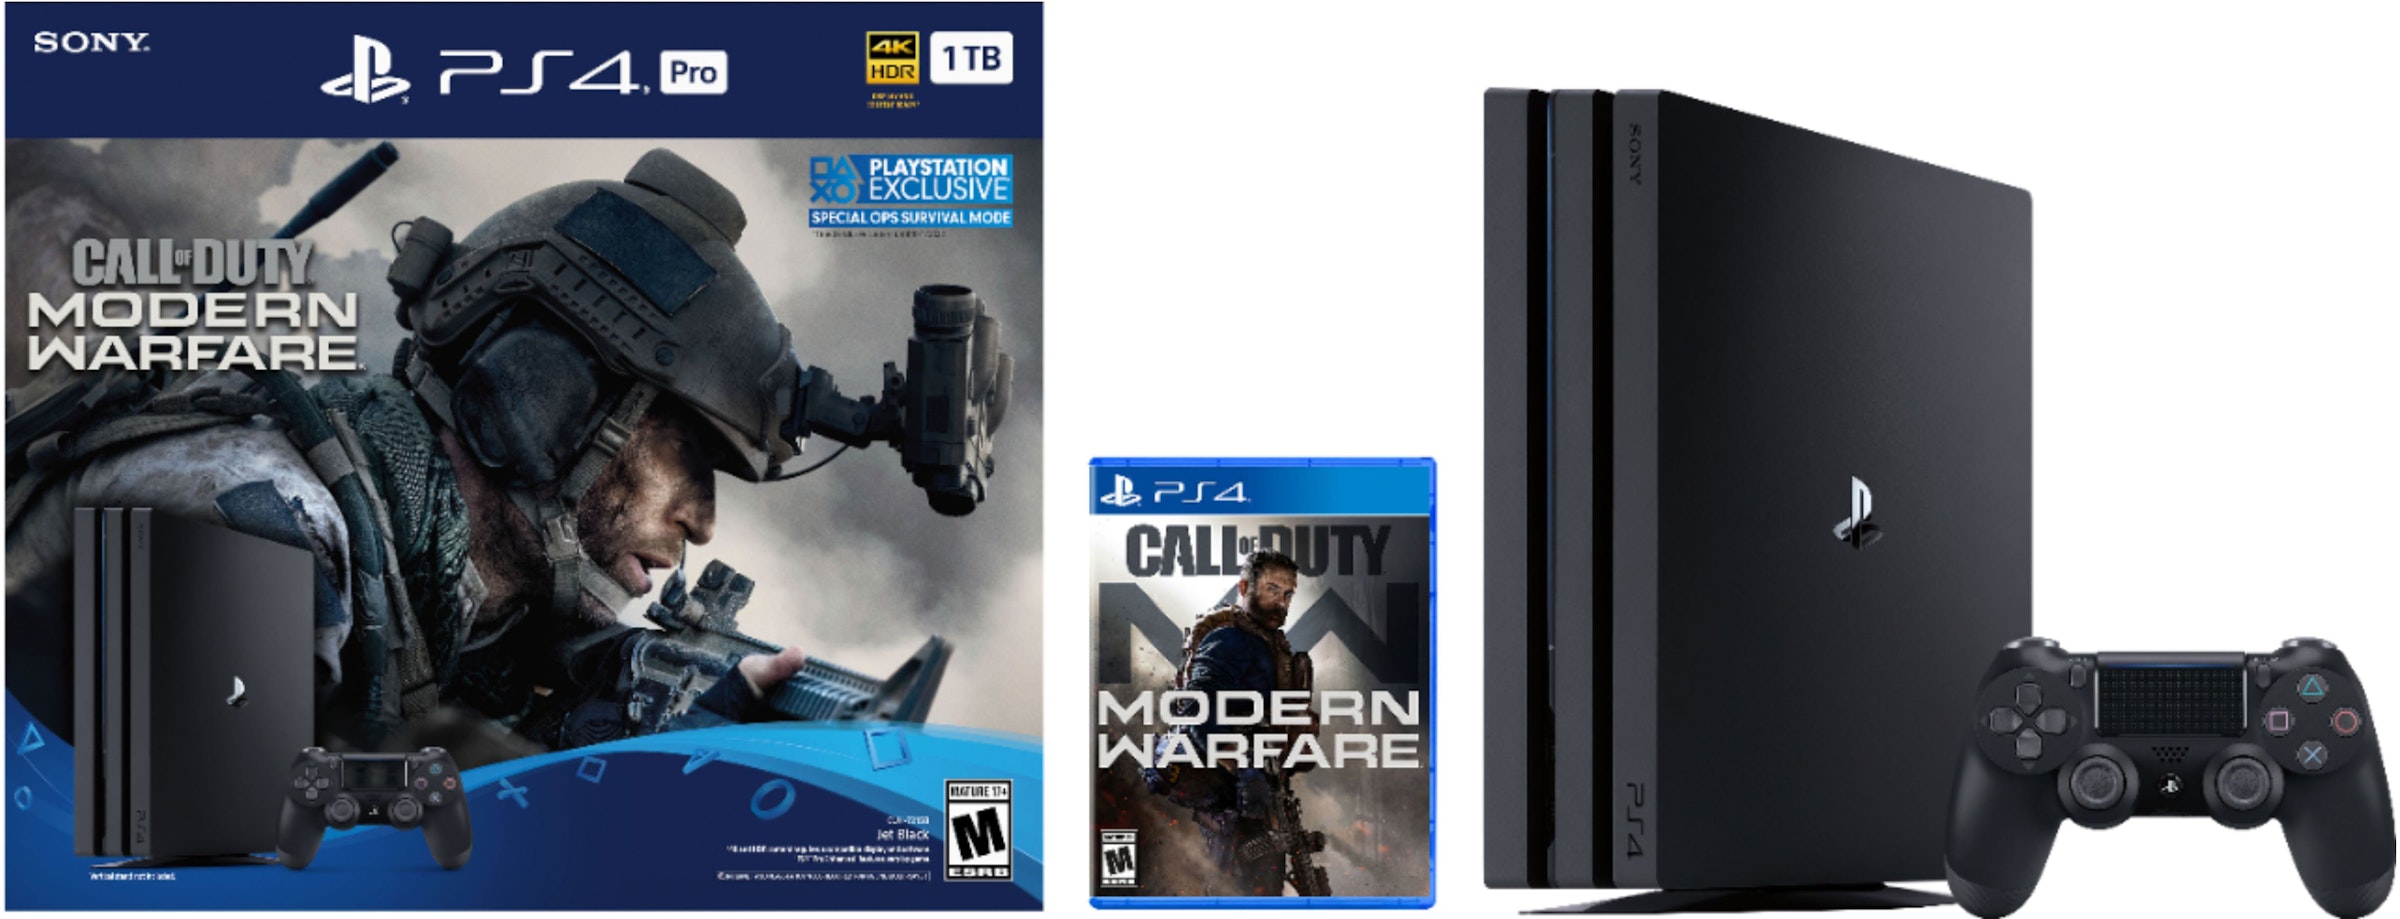 Sony Playstation PS4 1TB Call of Duty: Modern Warfare Bundle Console (US Plug) 3004138 - US